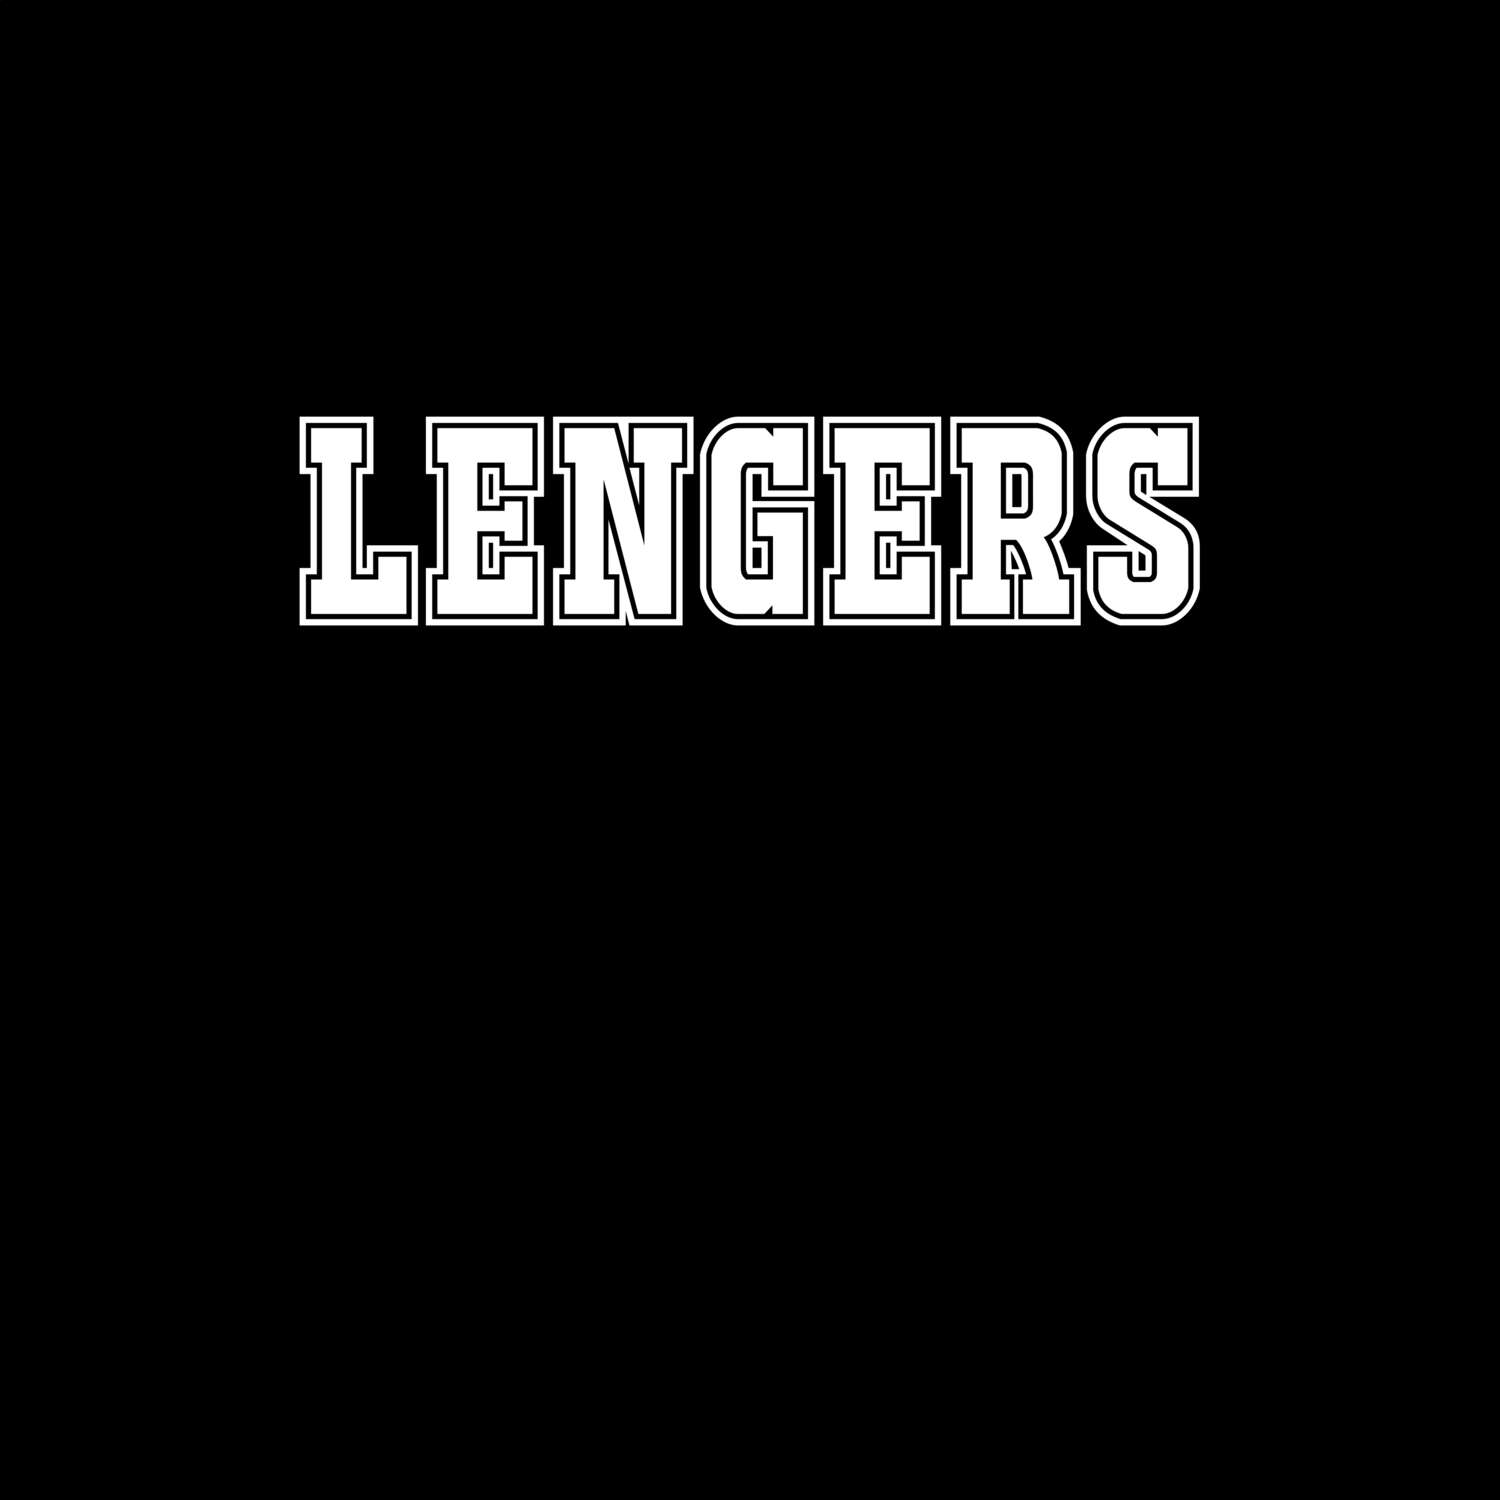 Lengers T-Shirt »Classic«